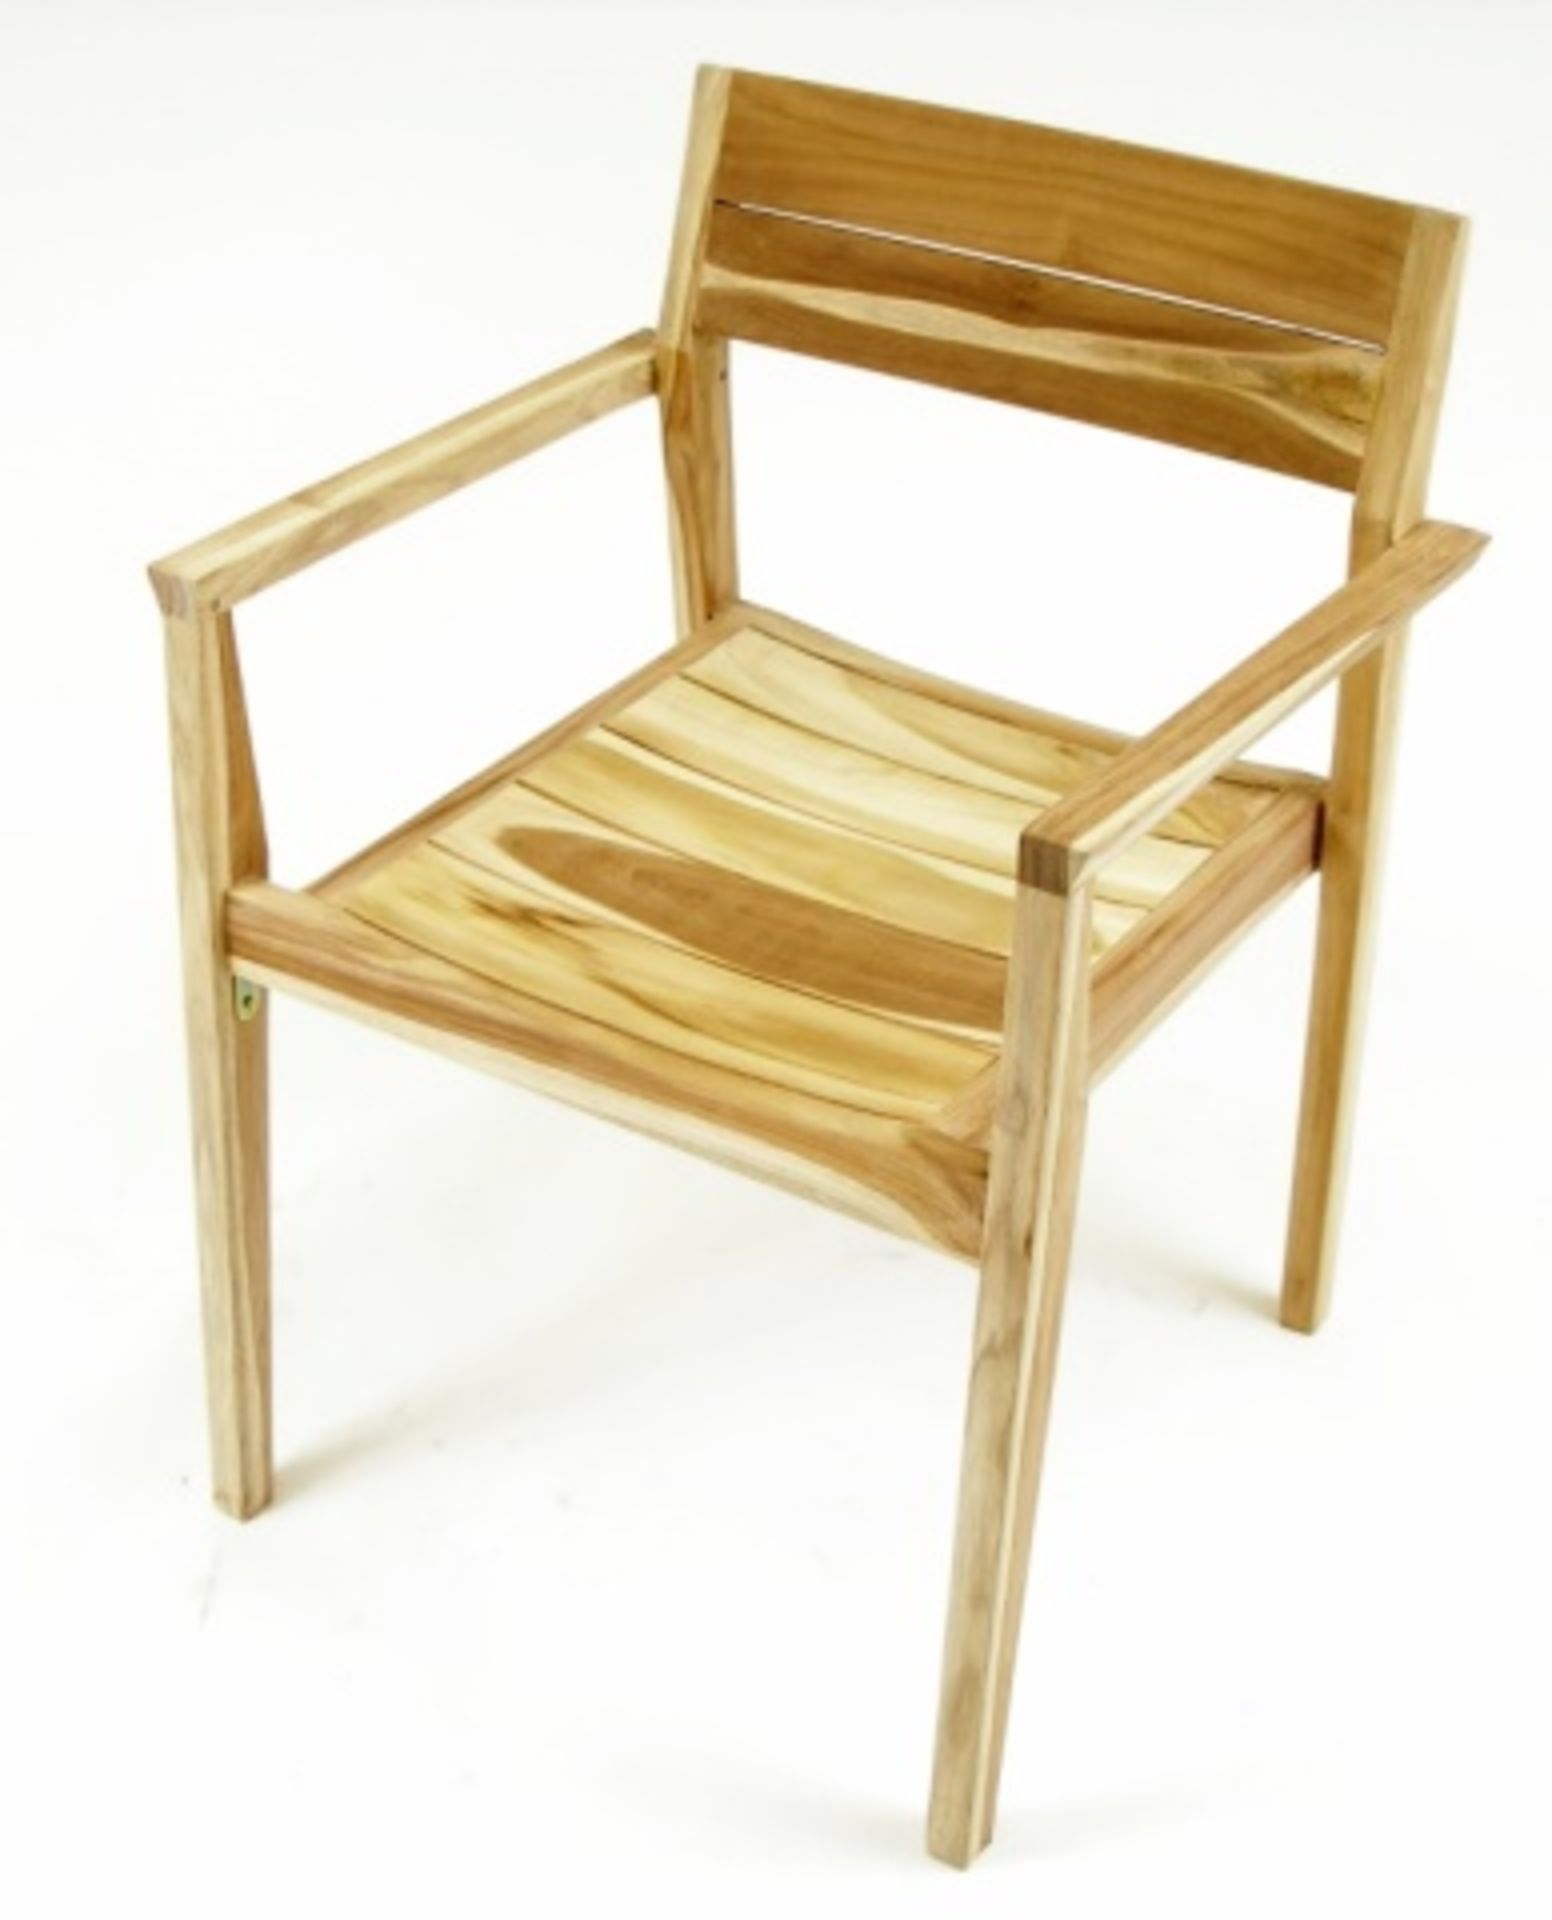 Kauai Arm Chair - Eno TT-71. Natural Teak. Dimensions: 22.5"w x 20.1"d x 30.1"h, 17.2"sh, 24.5"ah.